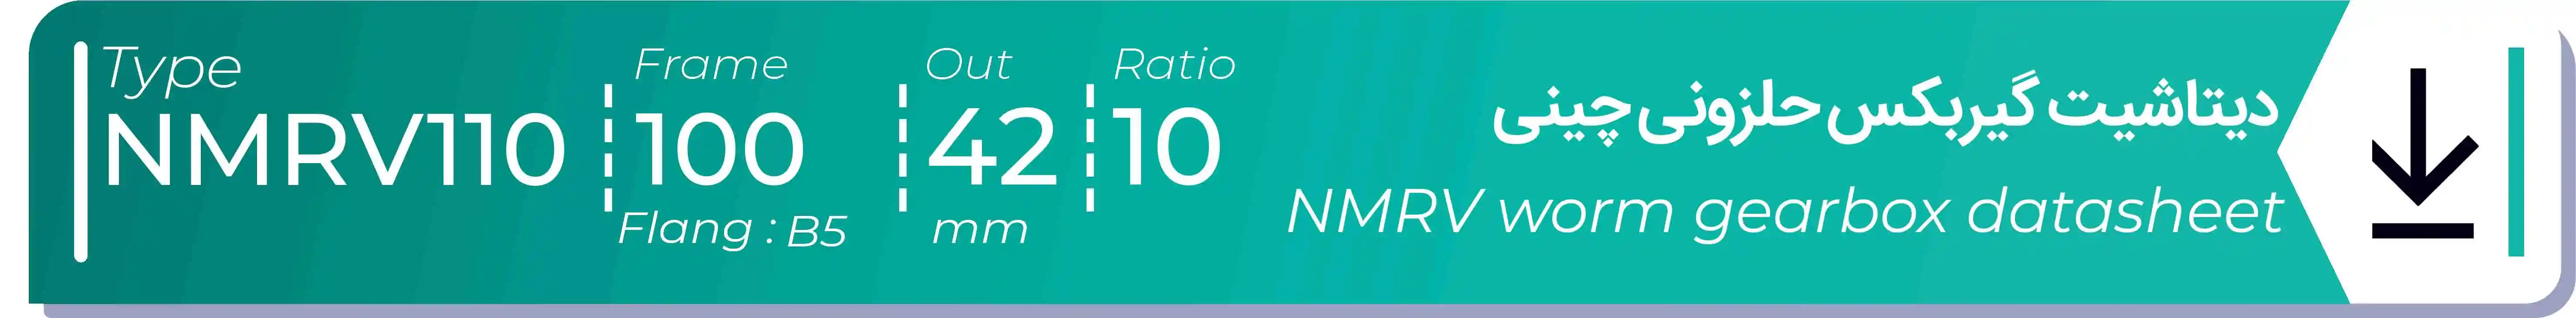  دیتاشیت و مشخصات فنی گیربکس حلزونی چینی   NMRV110  -  با خروجی 42- میلی متر و نسبت10 و فریم 100